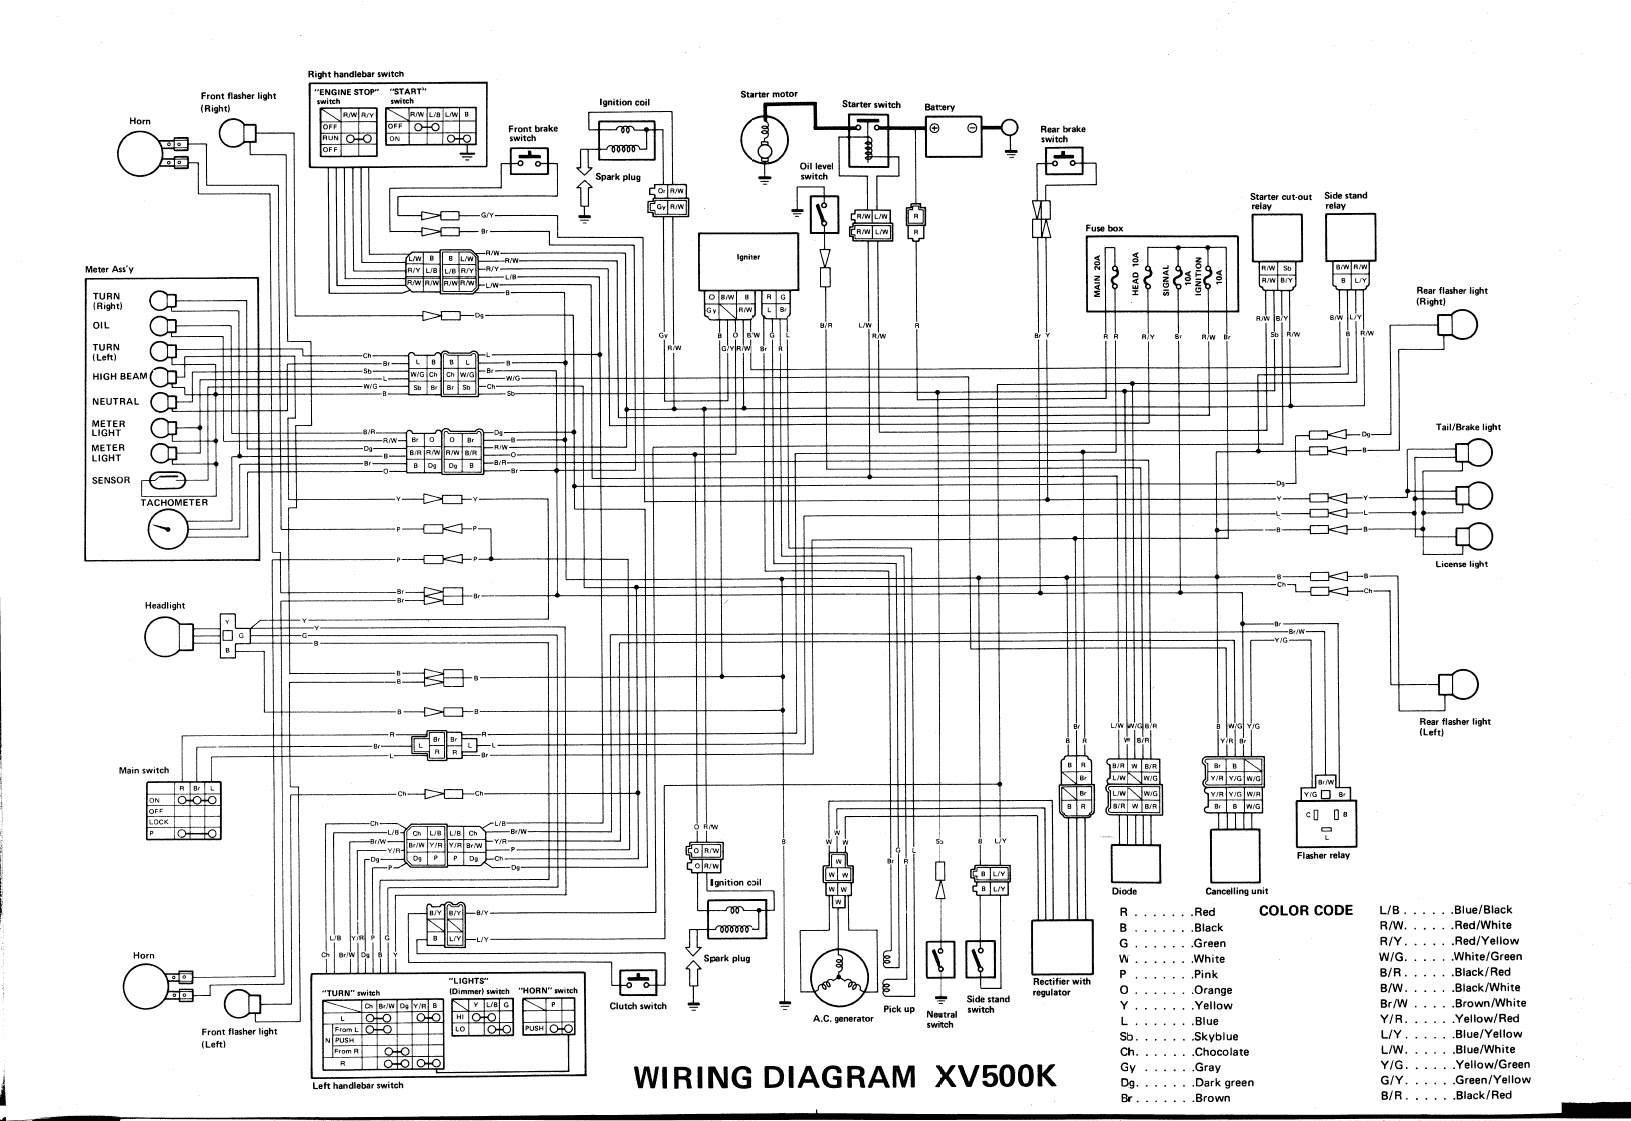 93 Yamaha Virago Wiring Diagram - Wiring Diagram Networks